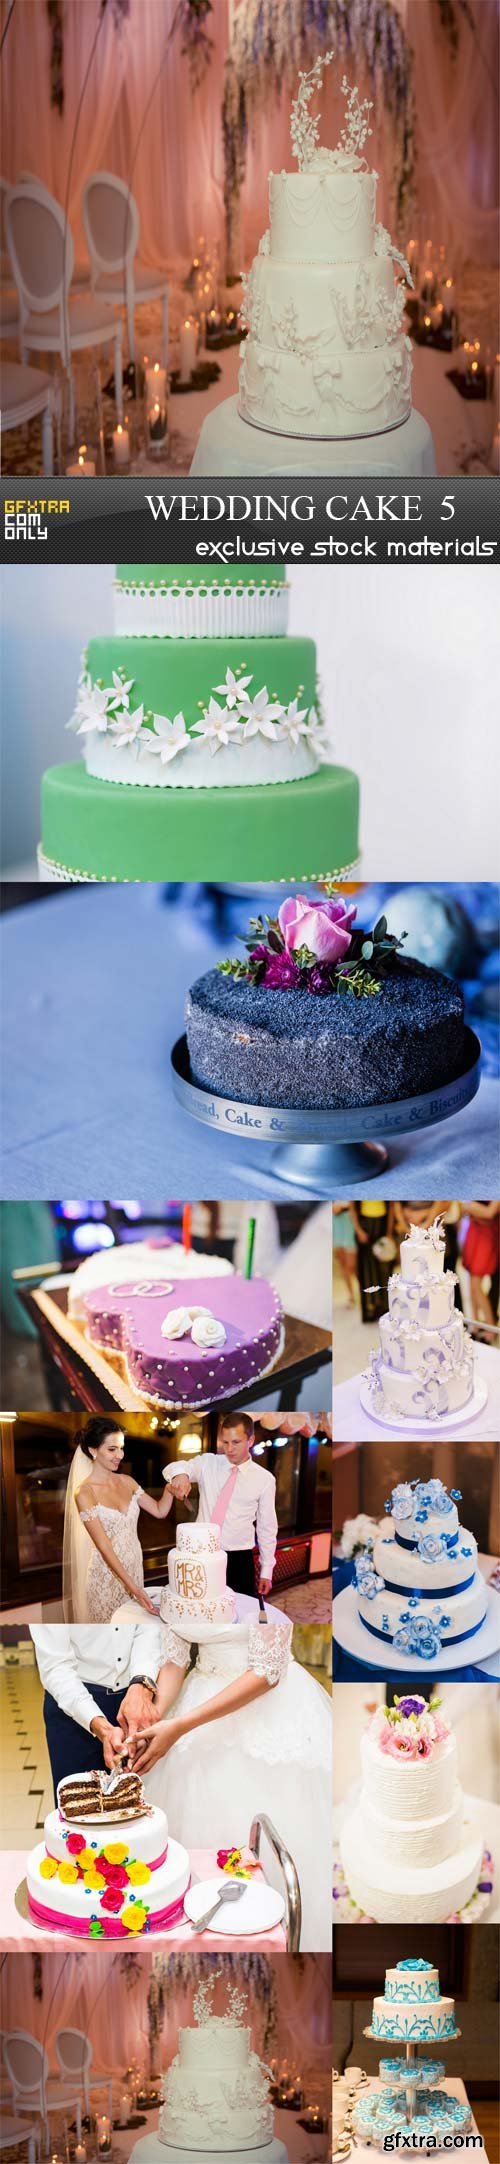 Wedding cake 5,10 UHQ JPEG